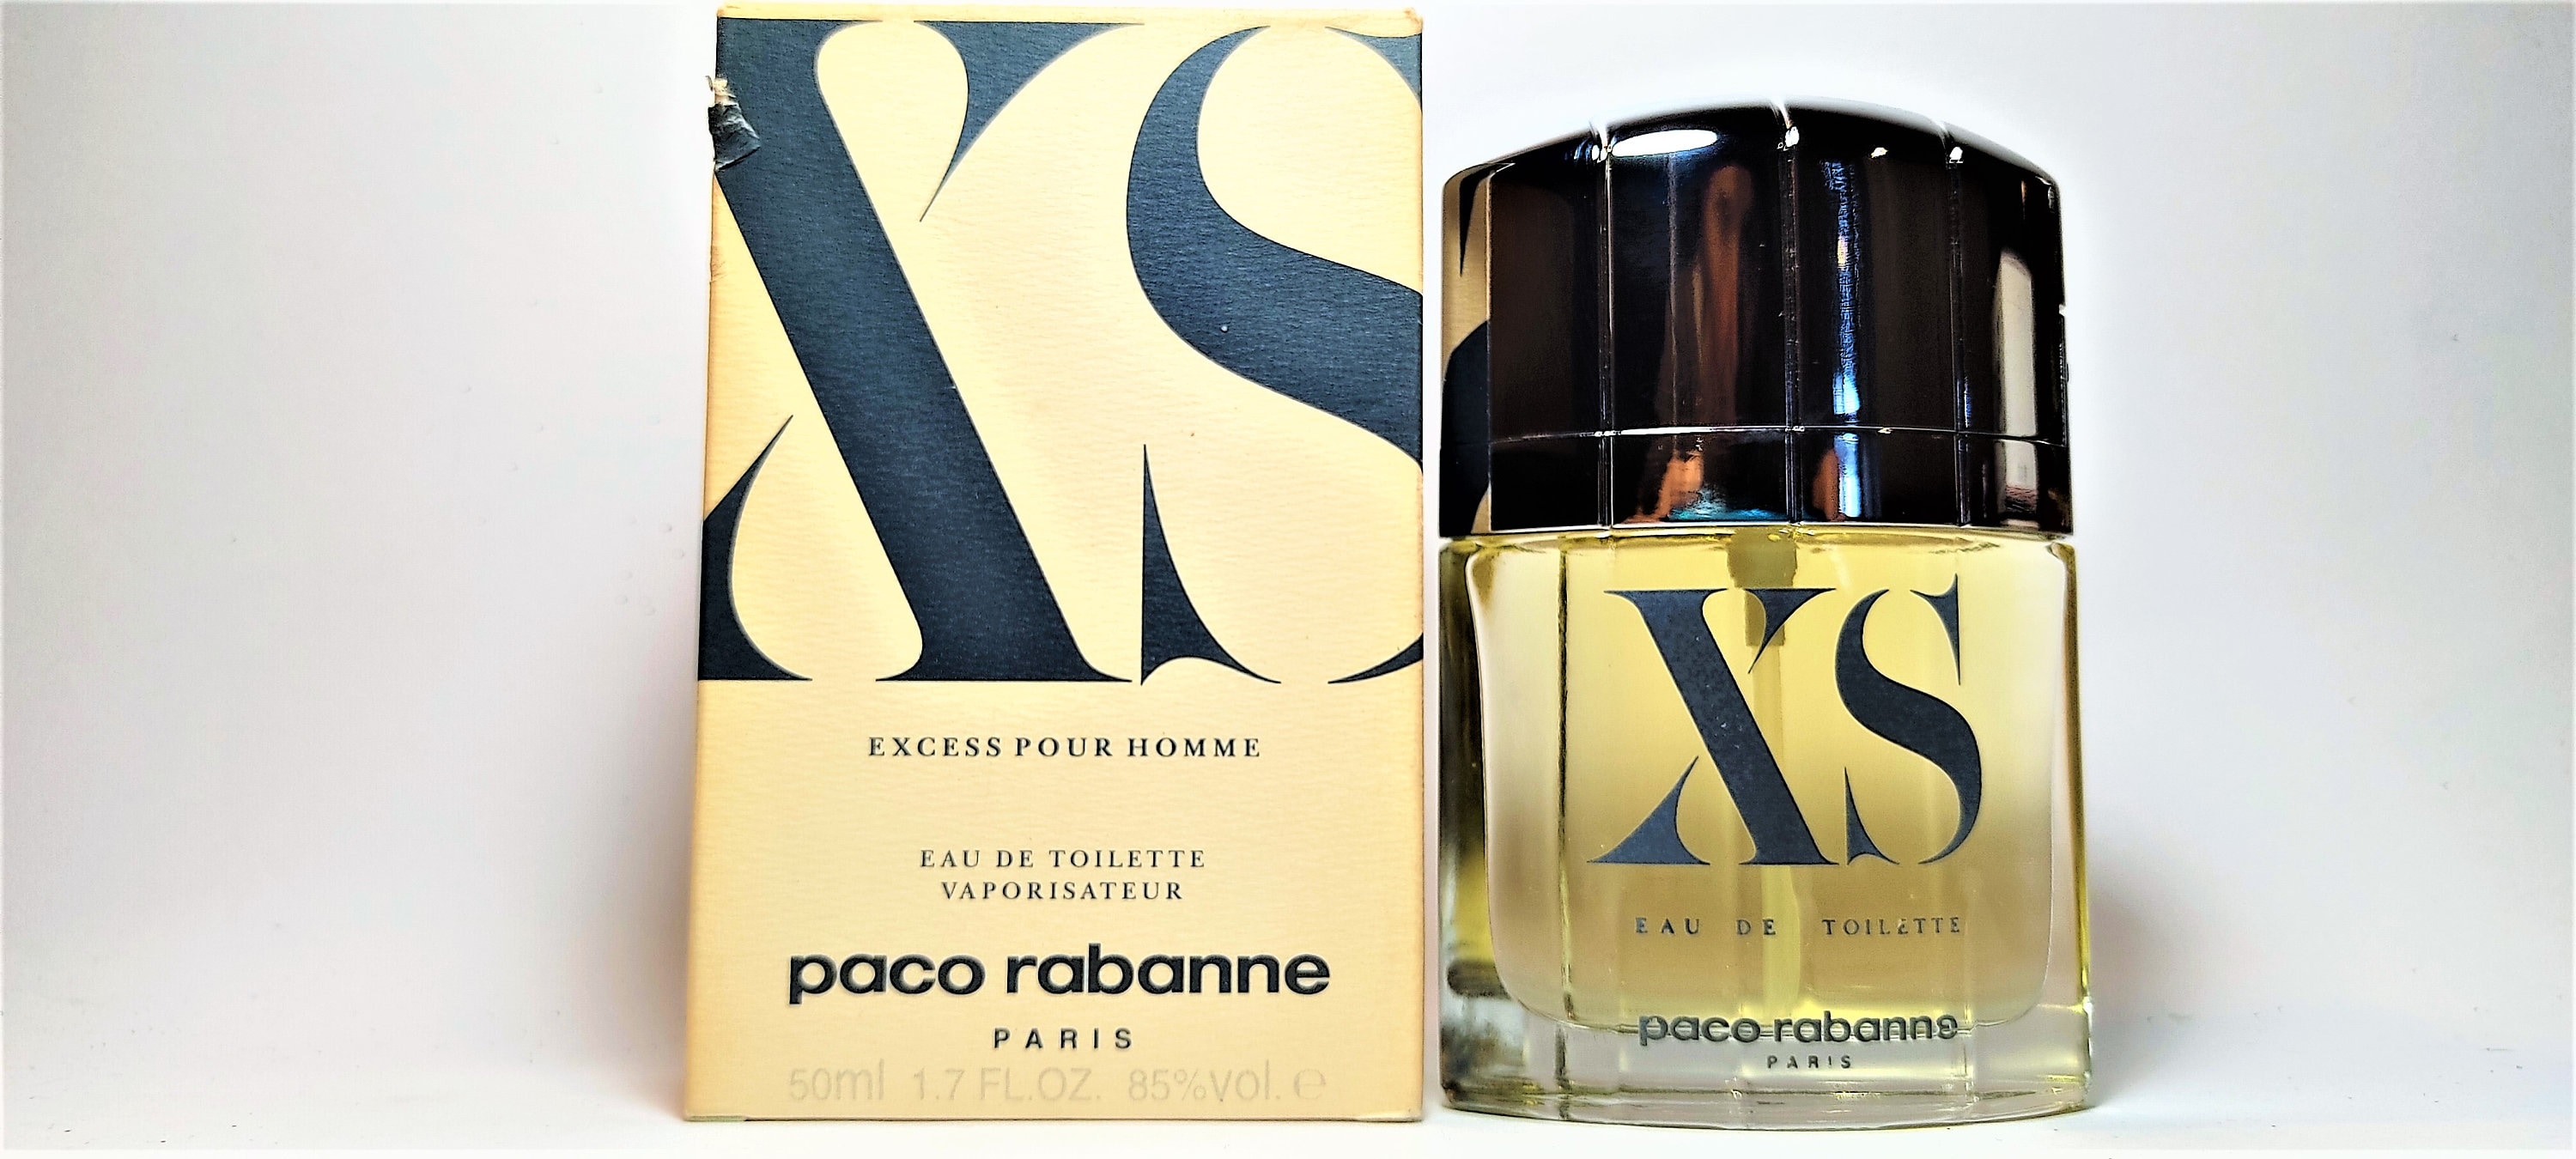 Paco Rabanne Great Brands Perfume XS Excess Pour HOMME Eau DE | Etsy